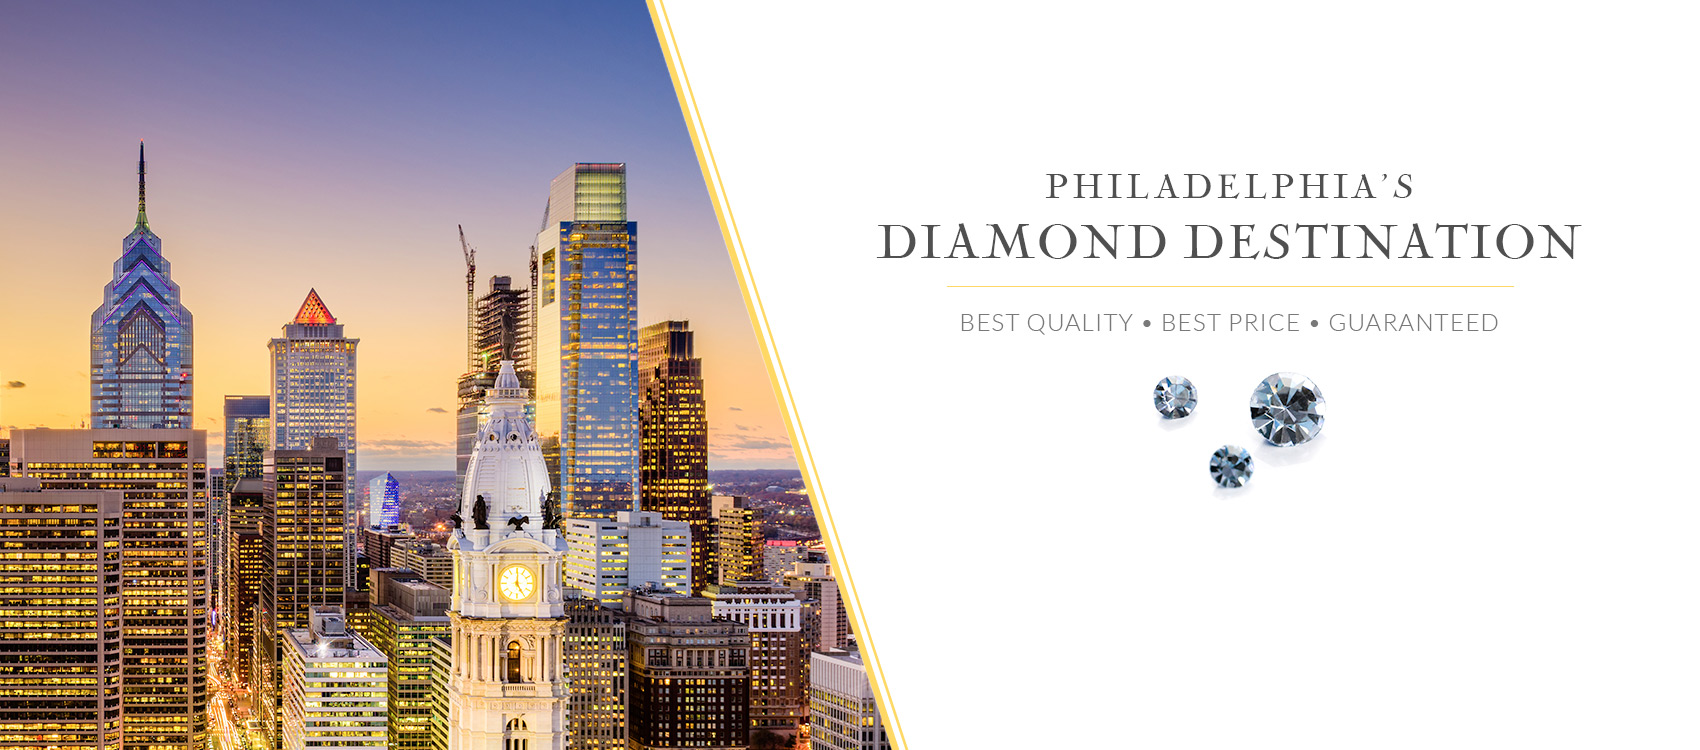 Philadelphias Diamond Destination